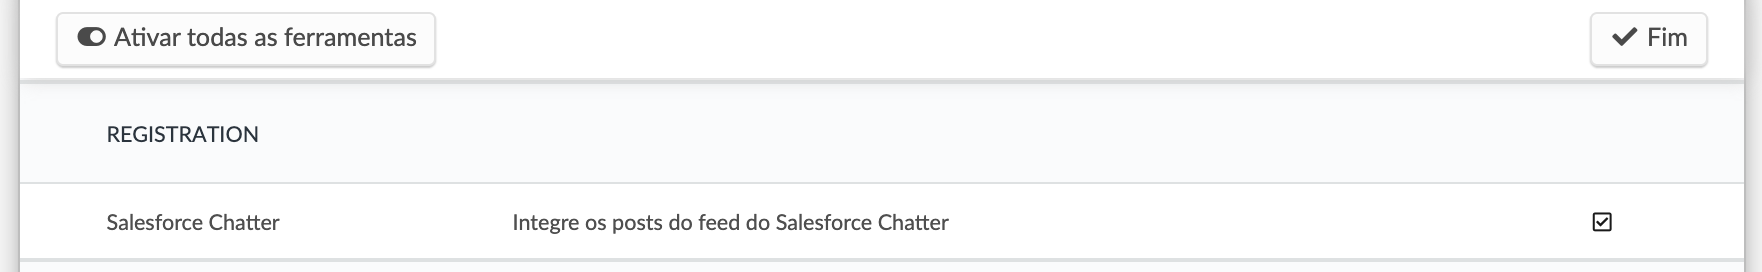 Ativando ferramenta Salesforce Chatter